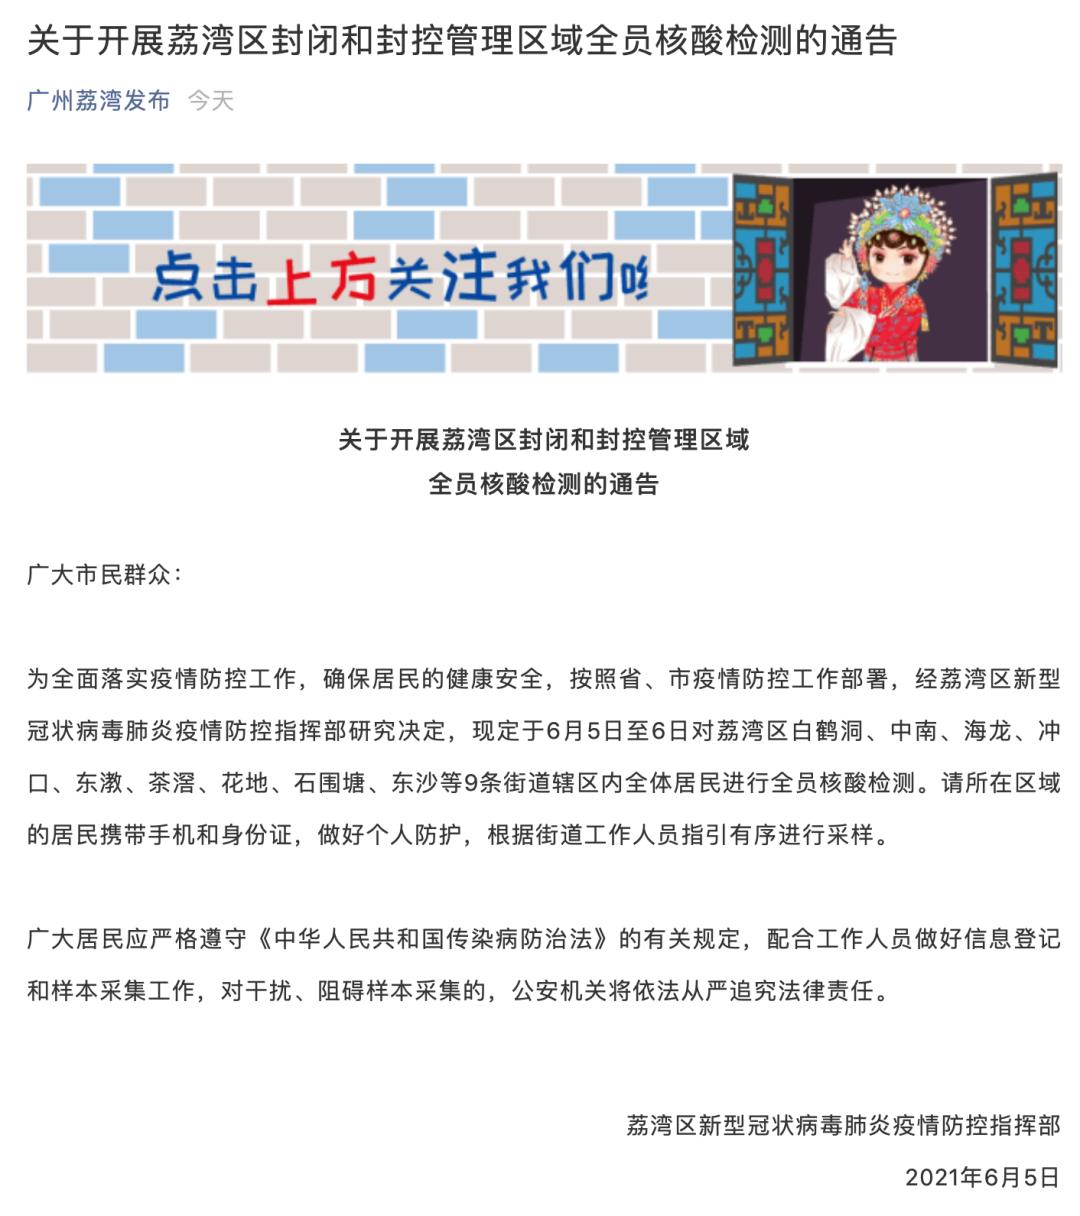 疫情分区分级防控工作指引的通知》,经广州市新冠肺炎防控指挥部同意